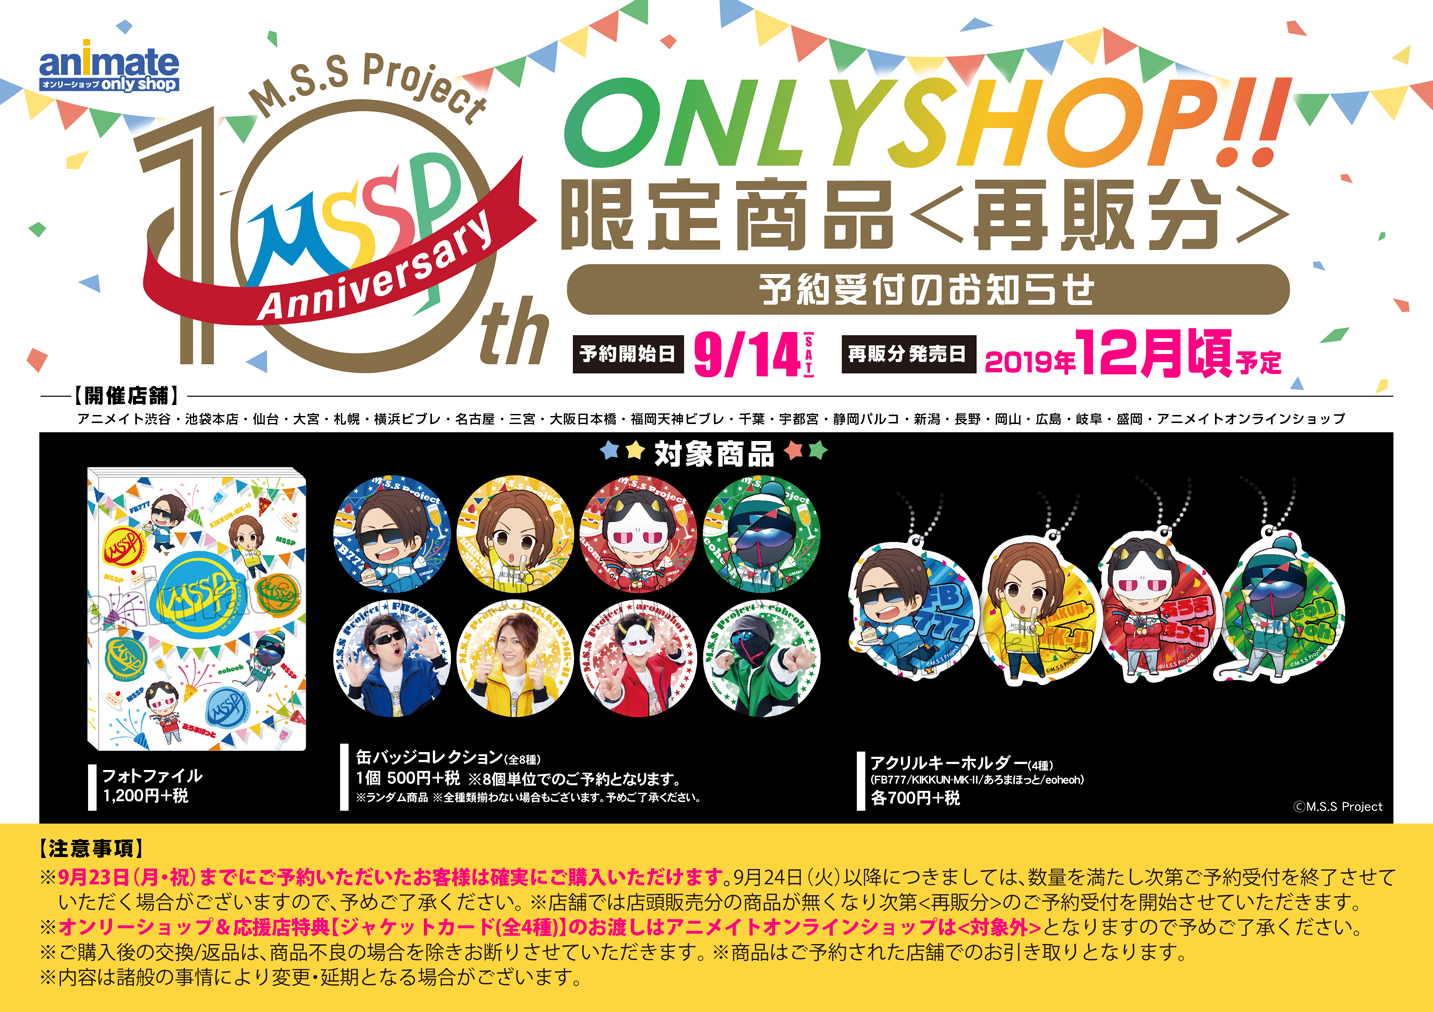 M S S Project 10th Anniversary Onlyshop のオンリーショップ限定商品や特典 イベント アニメイト